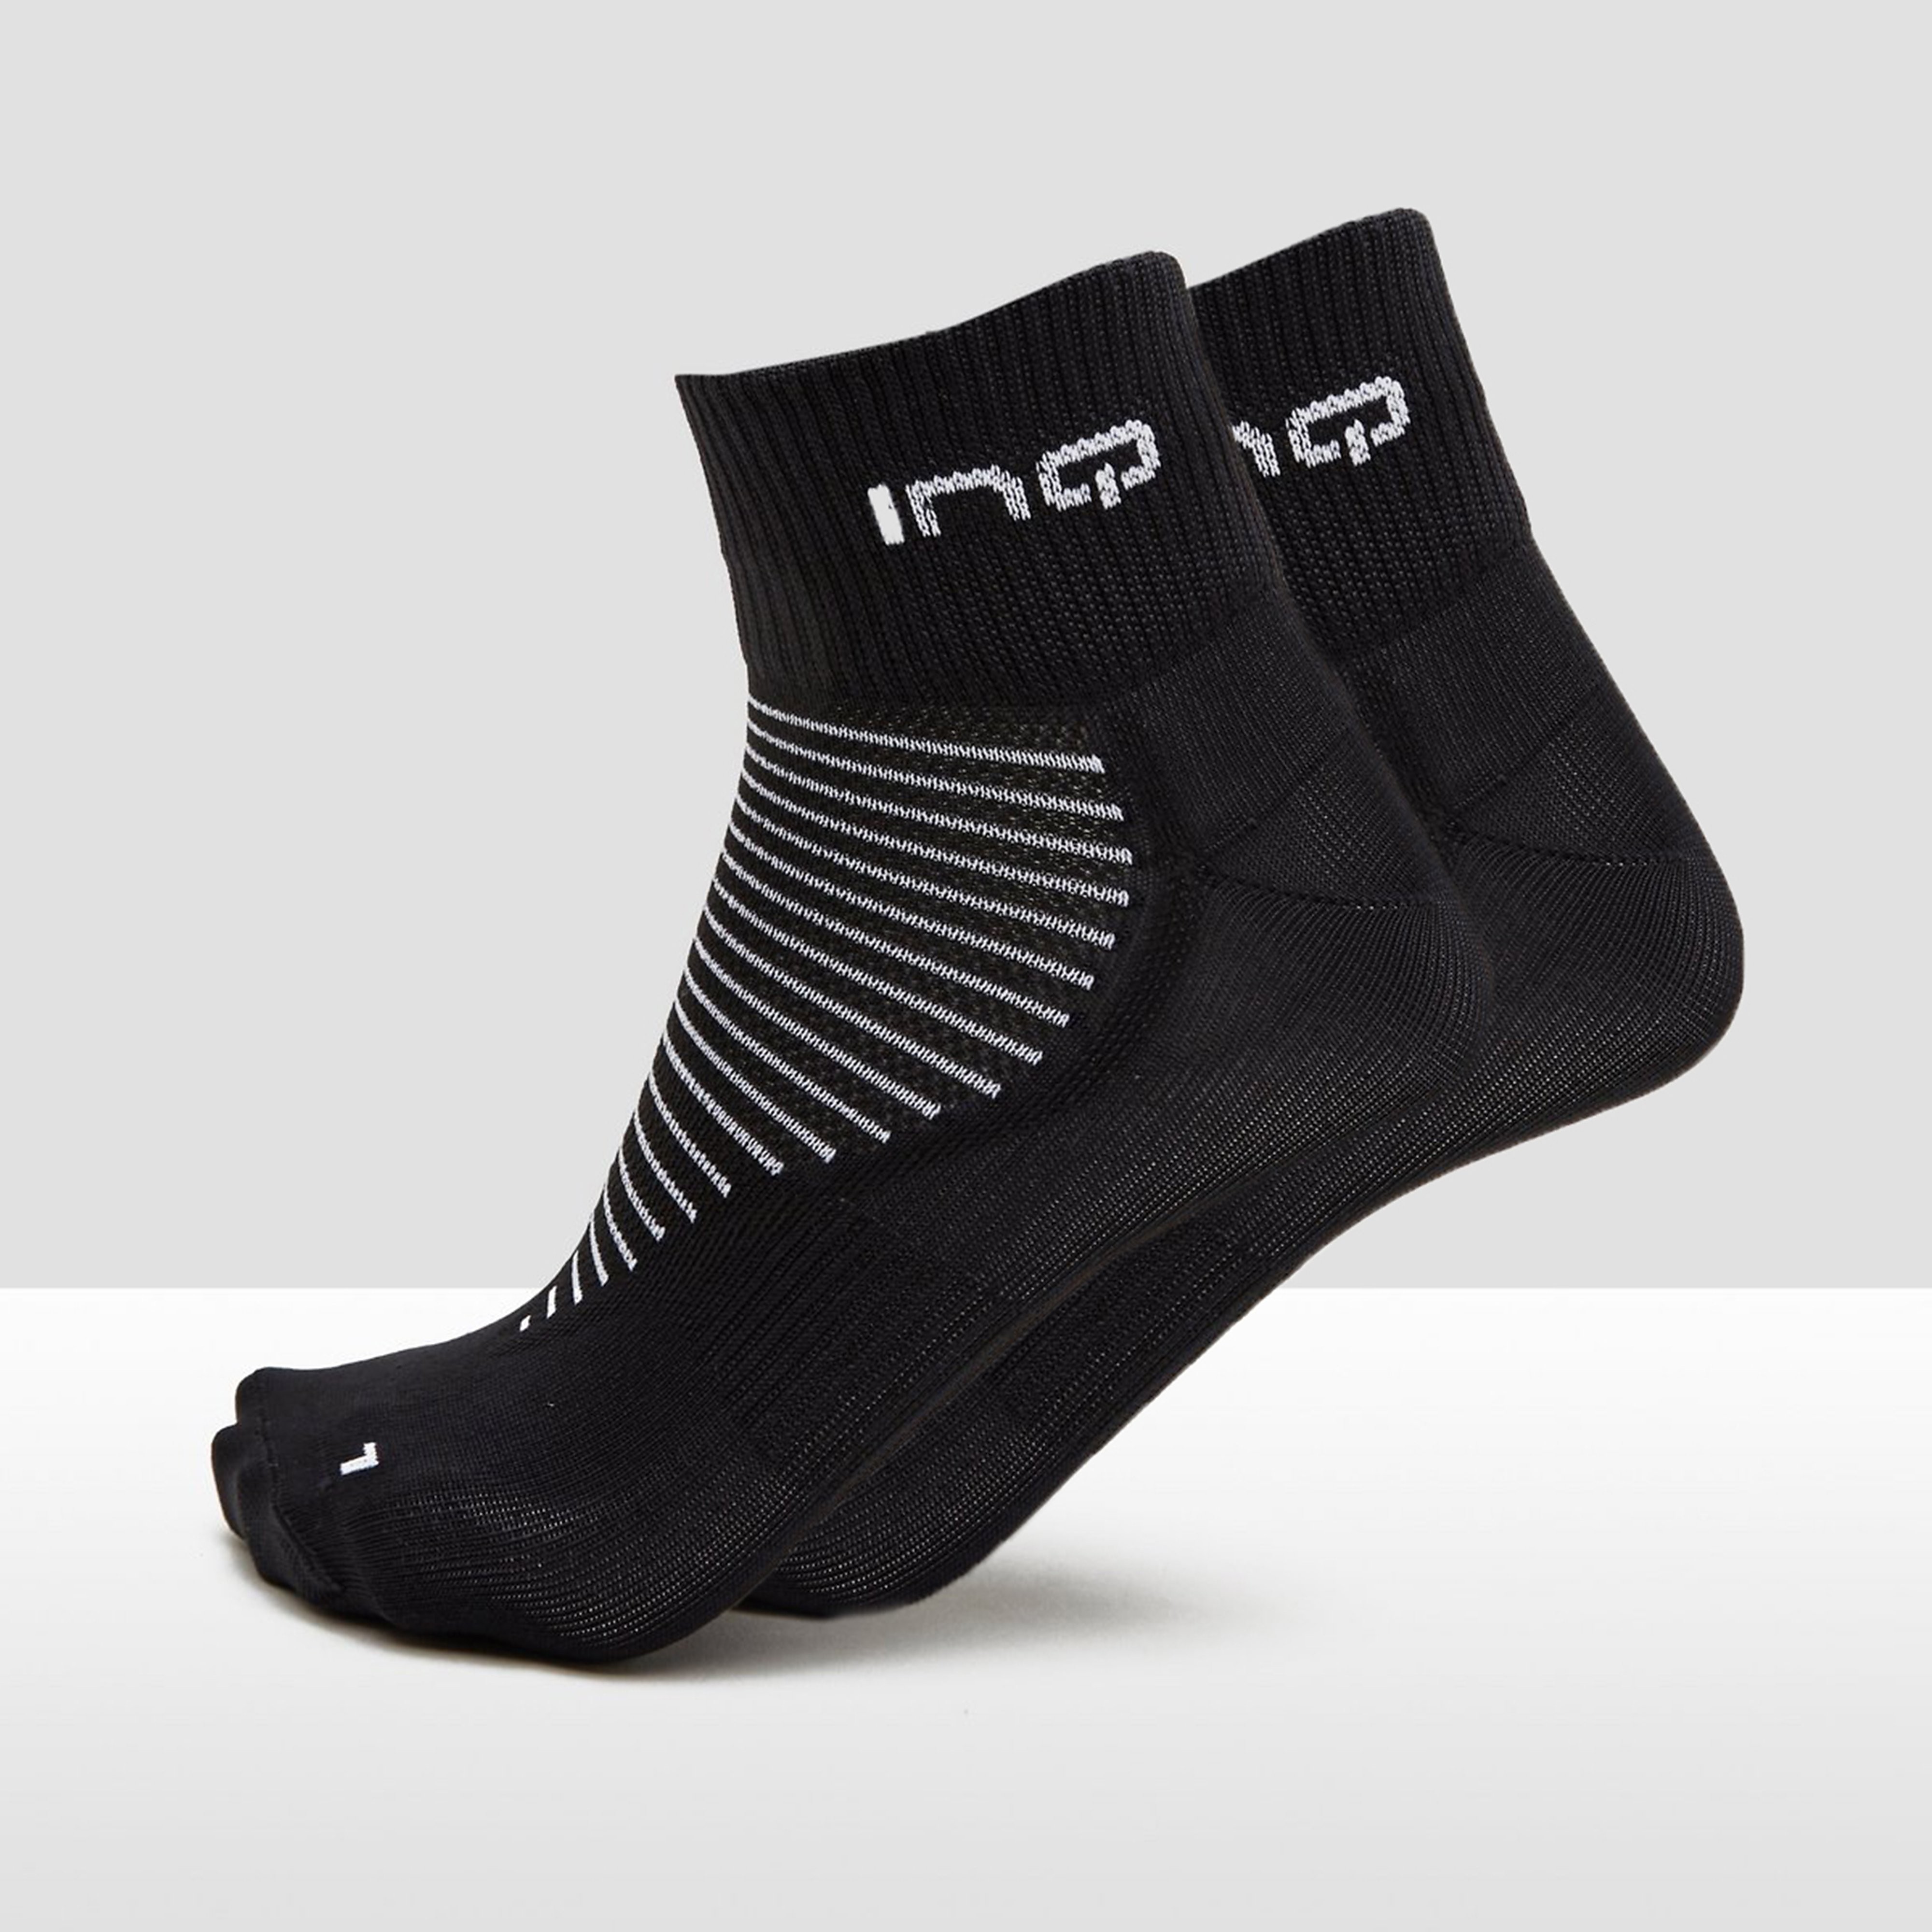 Inq inq pro run perform quarter hardloopsokken 2 pack zwart grijs